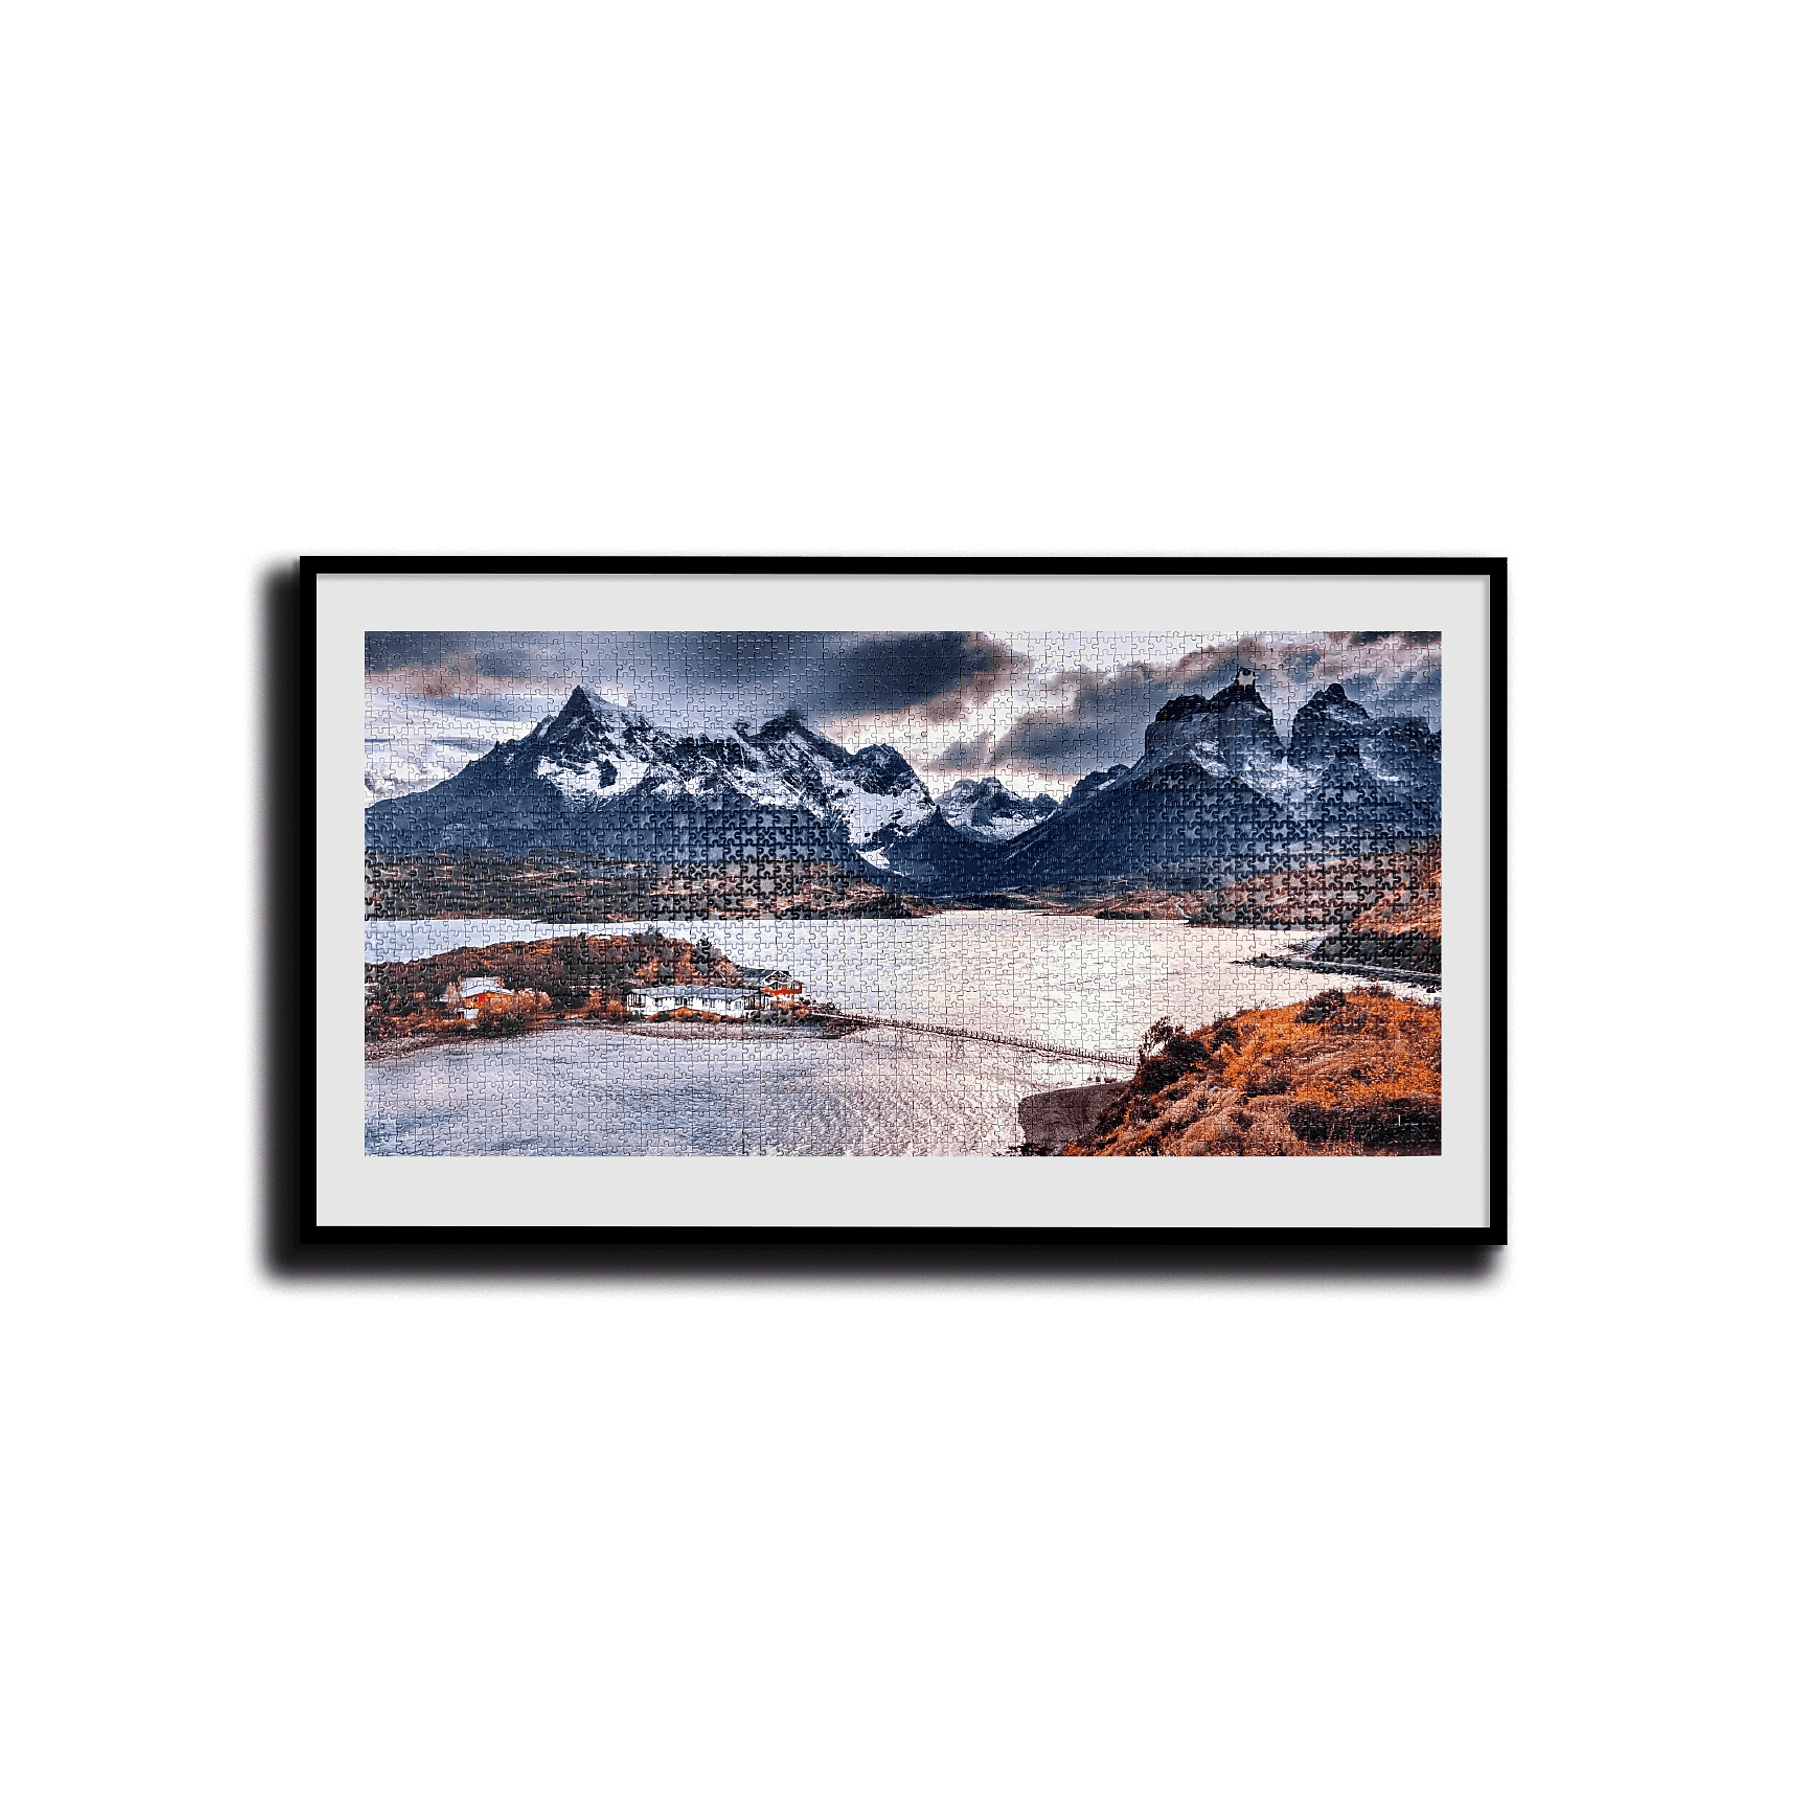 Puzzle Parque Nacional Torres del Paine (Cuernos) 2000 Piezas